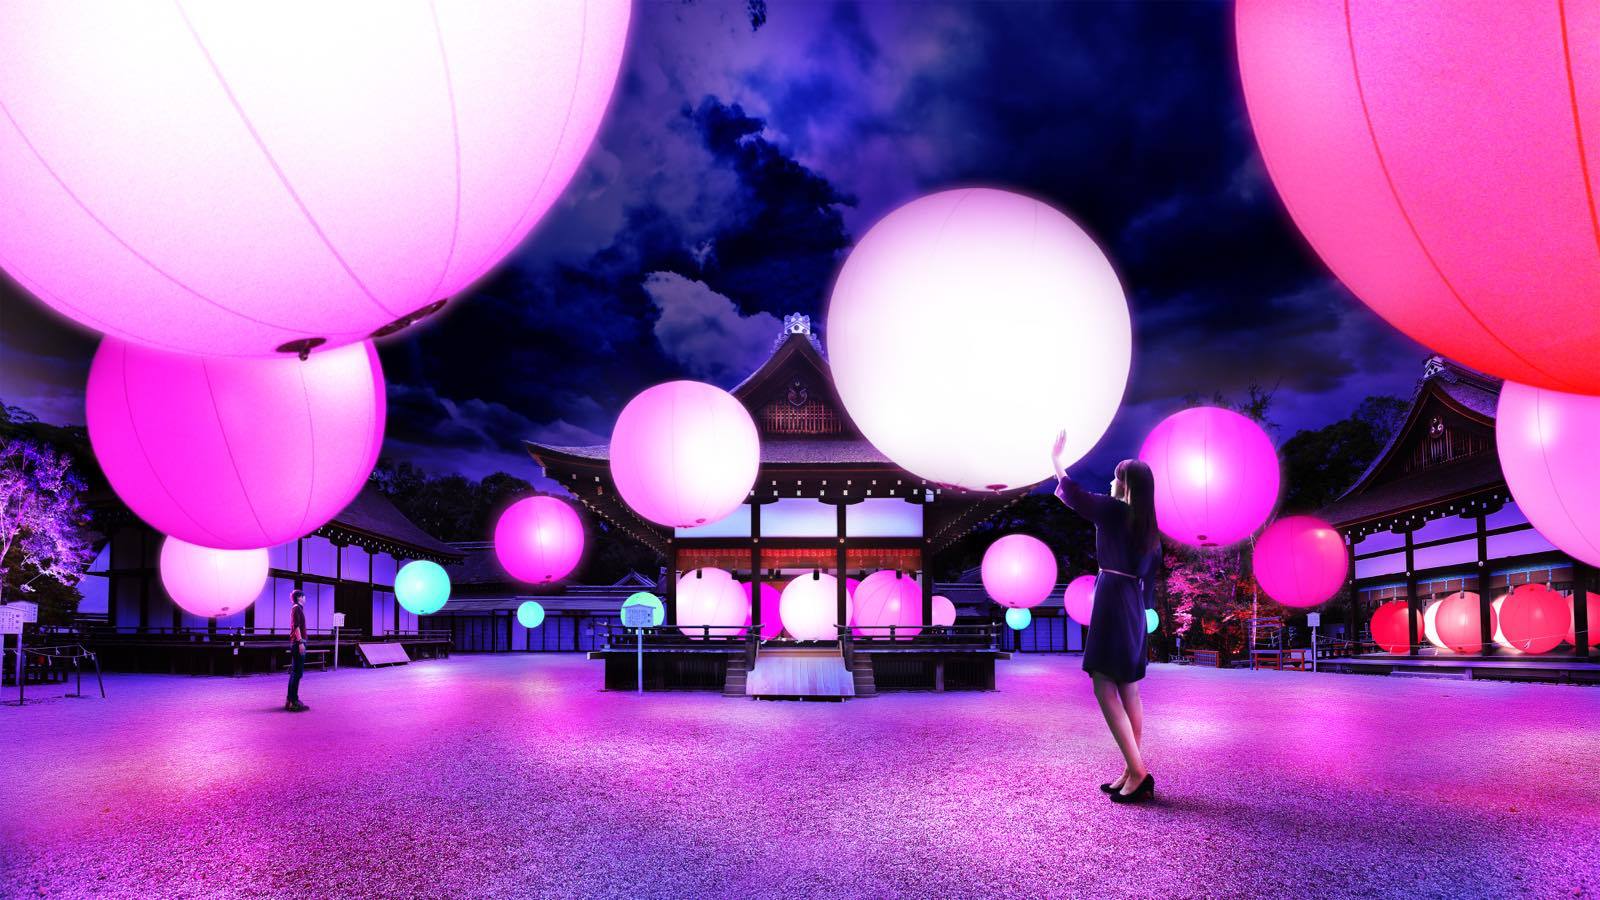 呼応する球体 - 下鴨神社 糺の森/ Resonating Spheres – Forest of Tadasu at Shimogamo Shrine